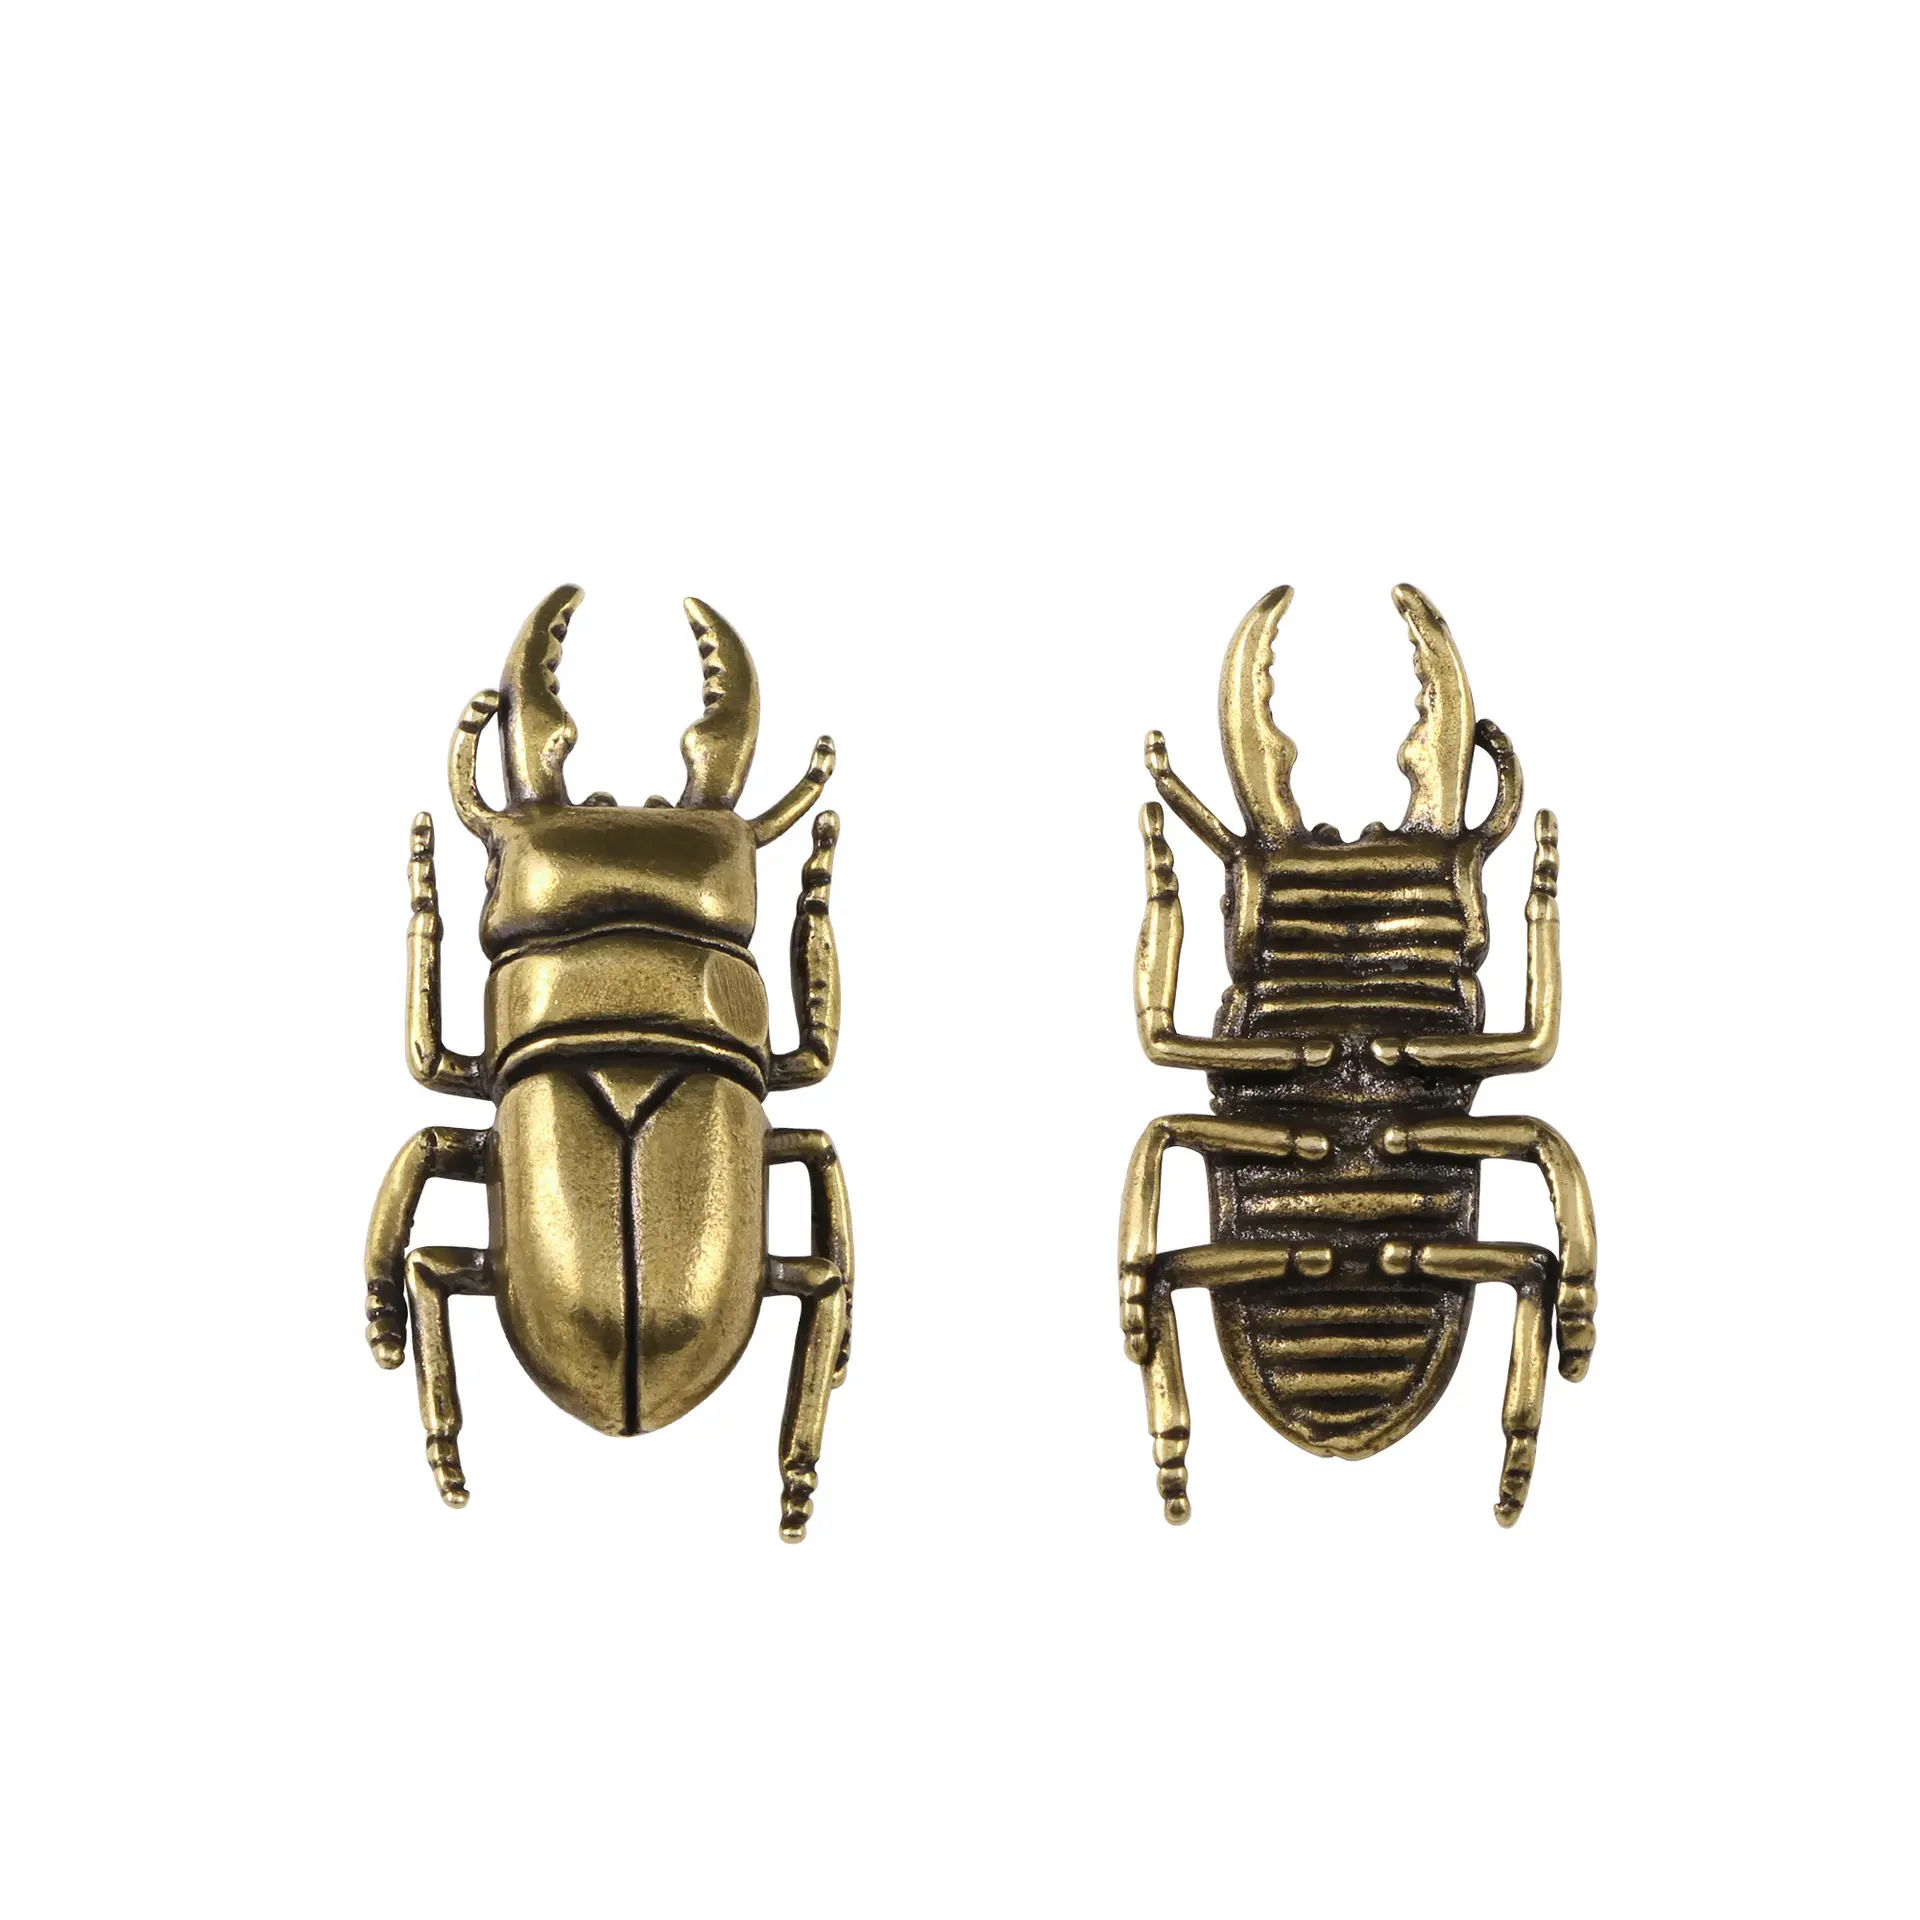 In ottone massiccio scarabeo antichi ornamenti creativi insetti decorazione da tavolo regalo rame artigianato.